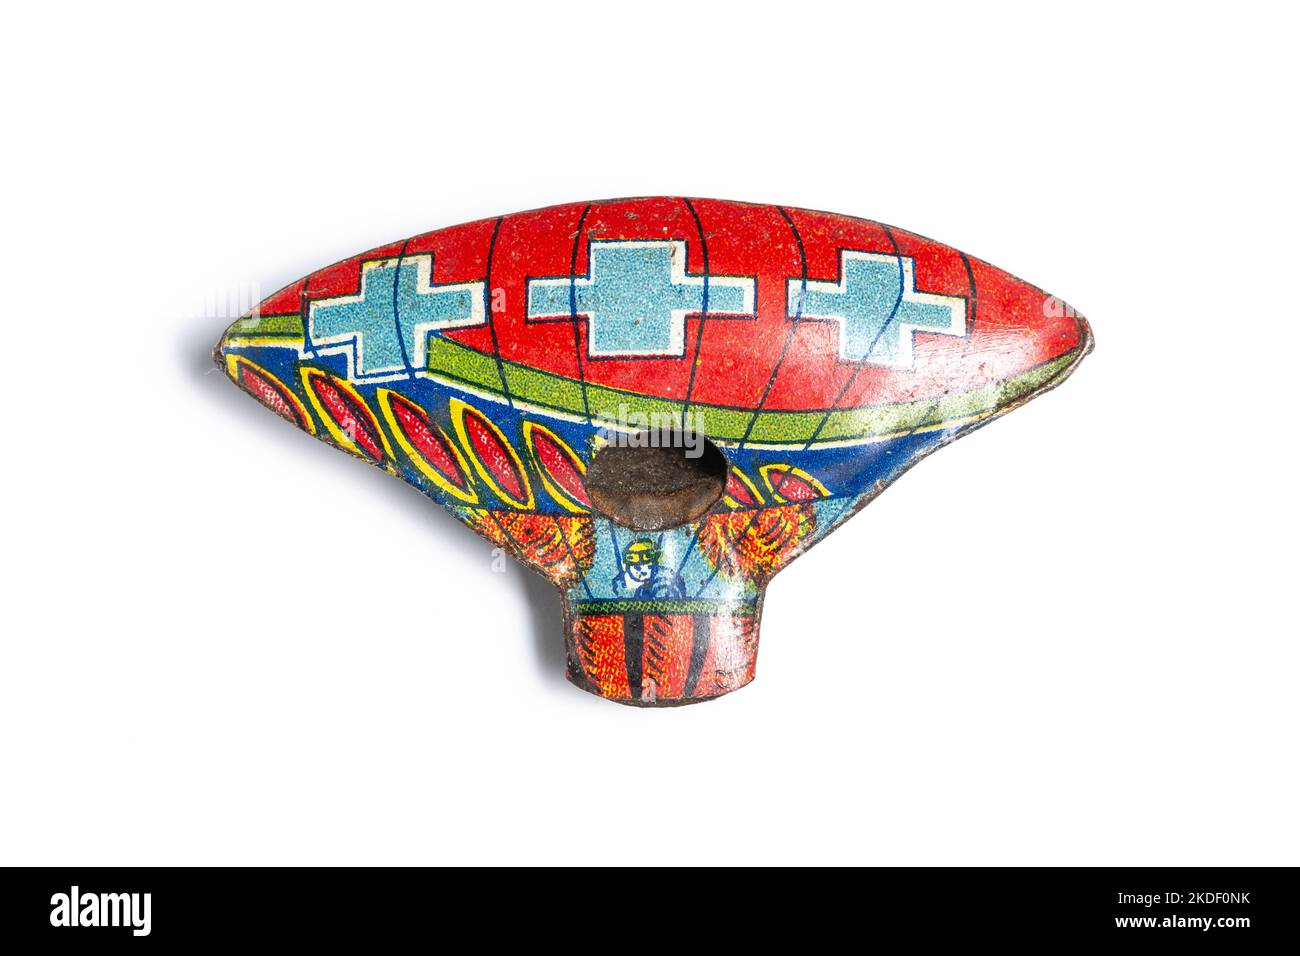 Bunte Toy Weißblech Pfeife basierend auf einem Design eines Heißluftballons, oder dirigible, oder Blimp. Hergestellt in Japan in den Jahren 1920s - 1930s. Stockfoto